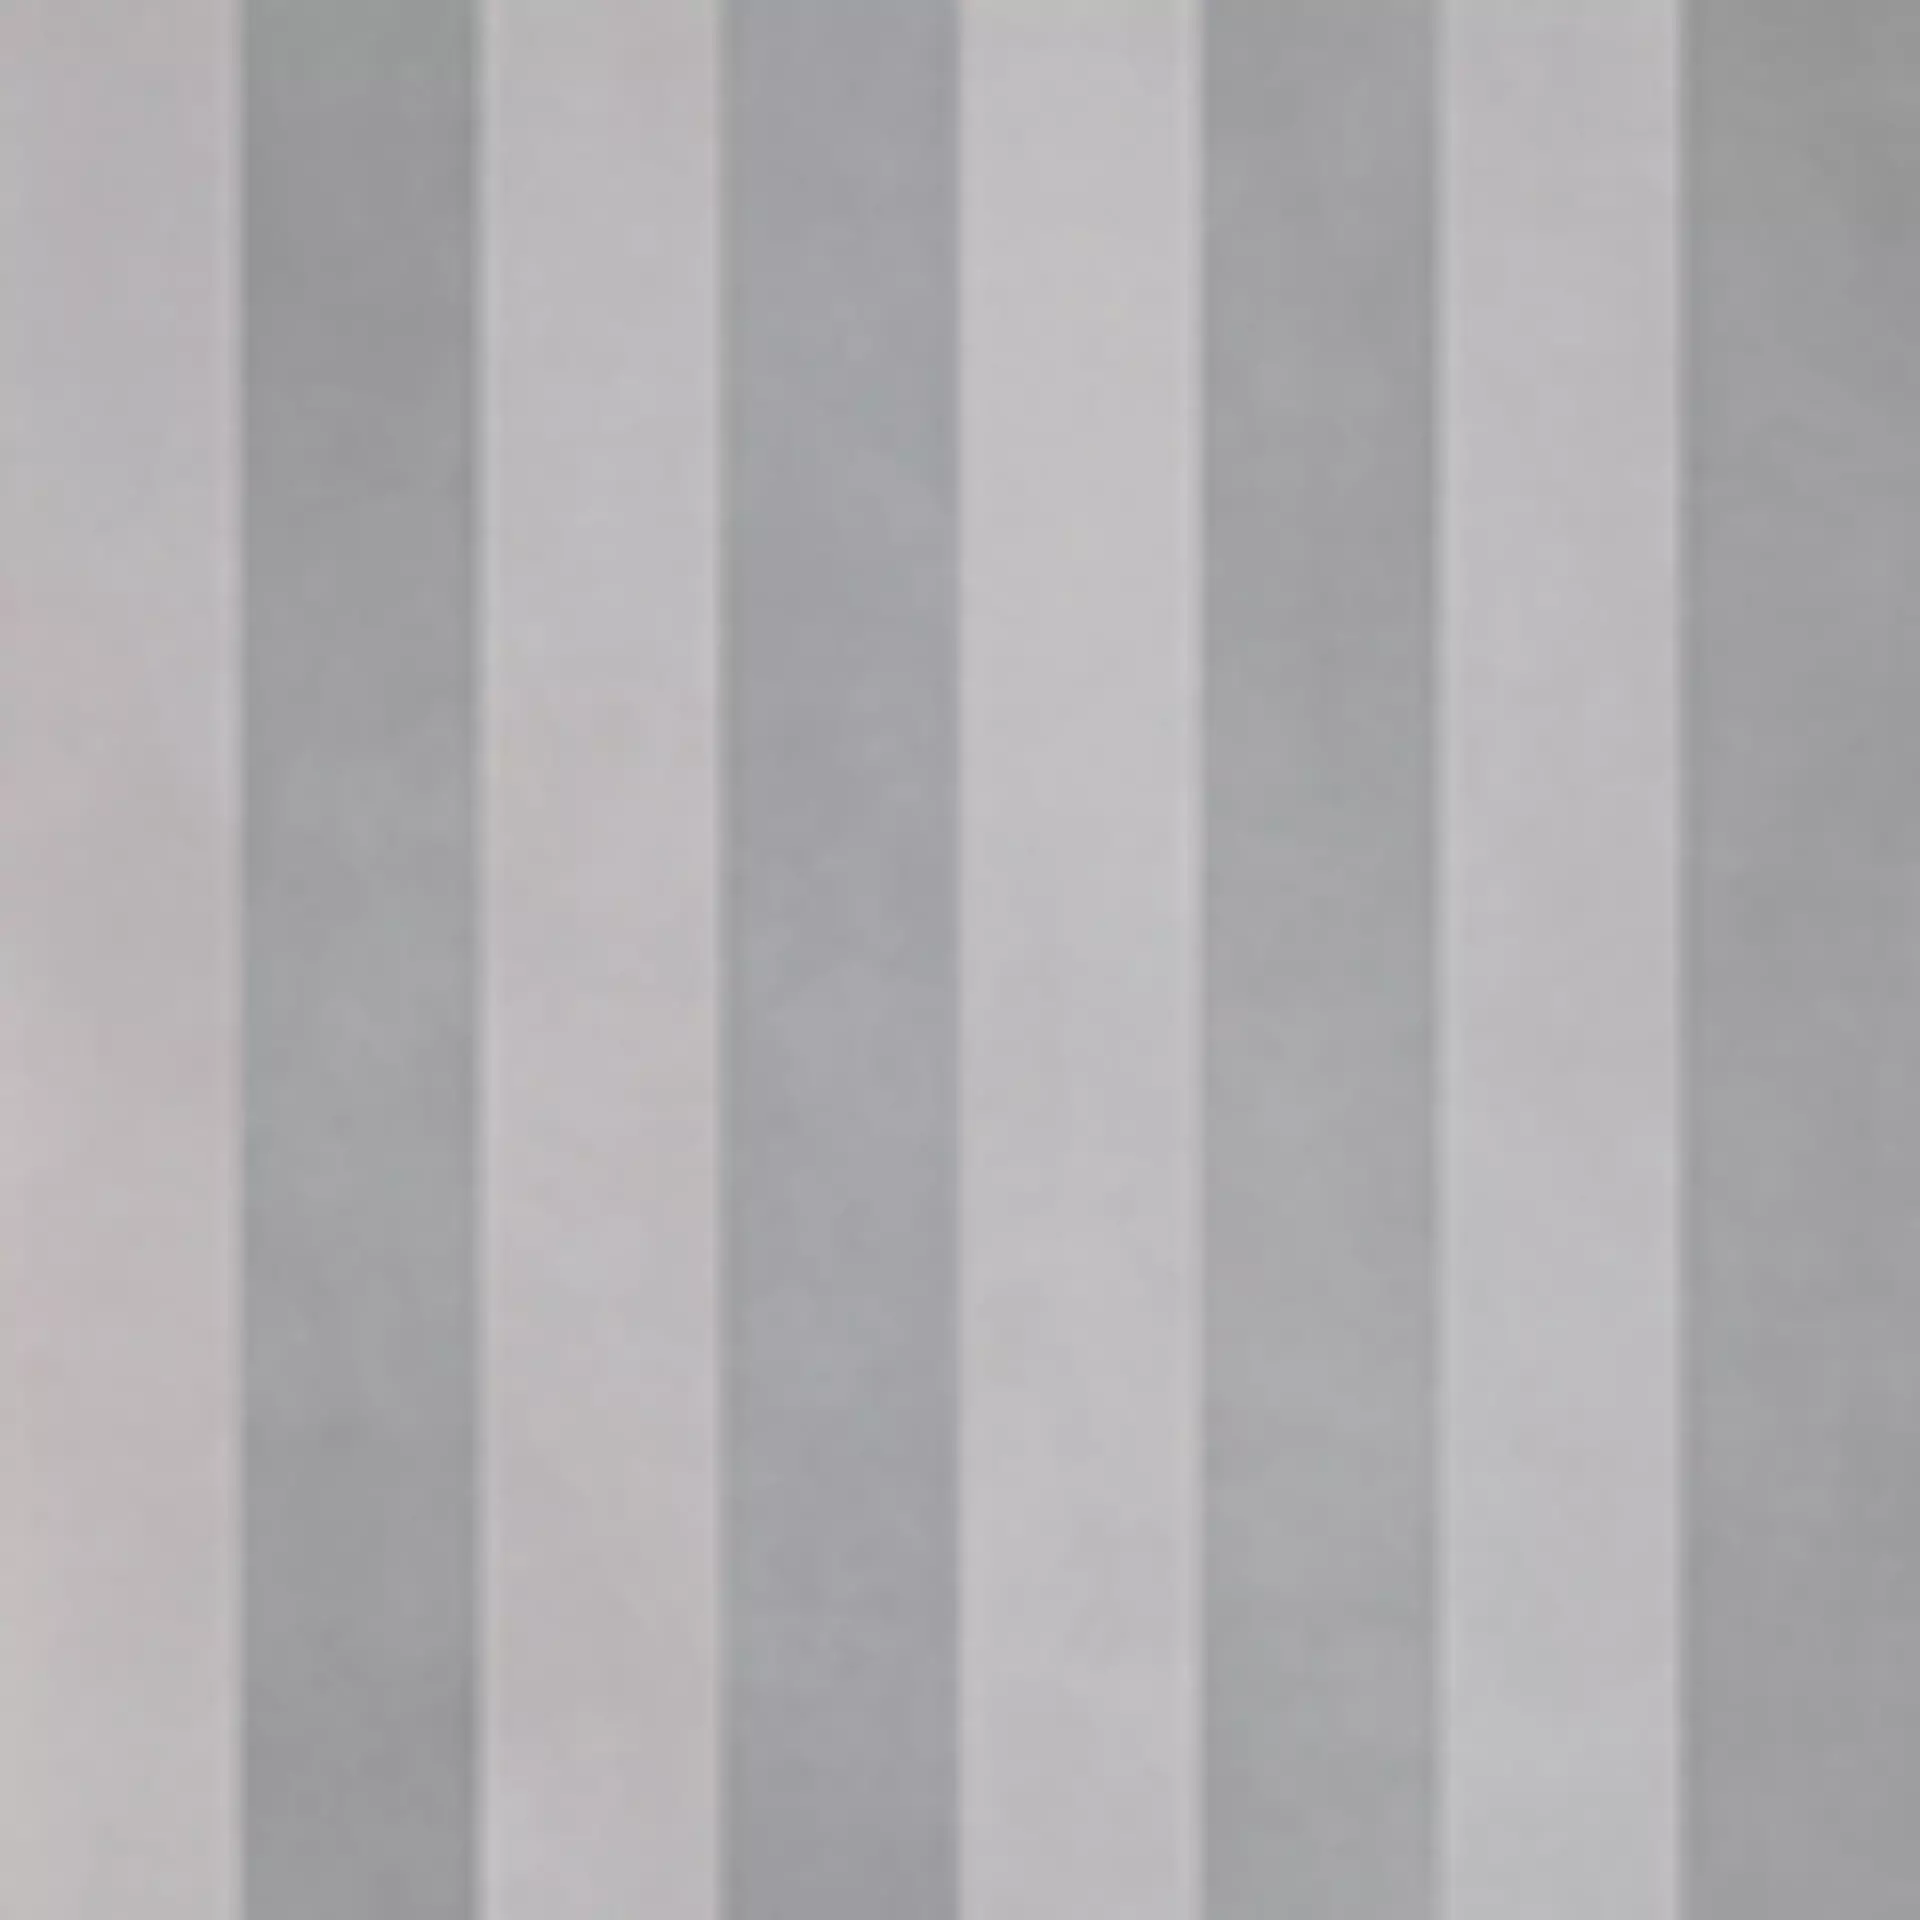 Casalgrande Revolution White Naturale – Matt Decor Stripes 11461228 60x120cm 10mm